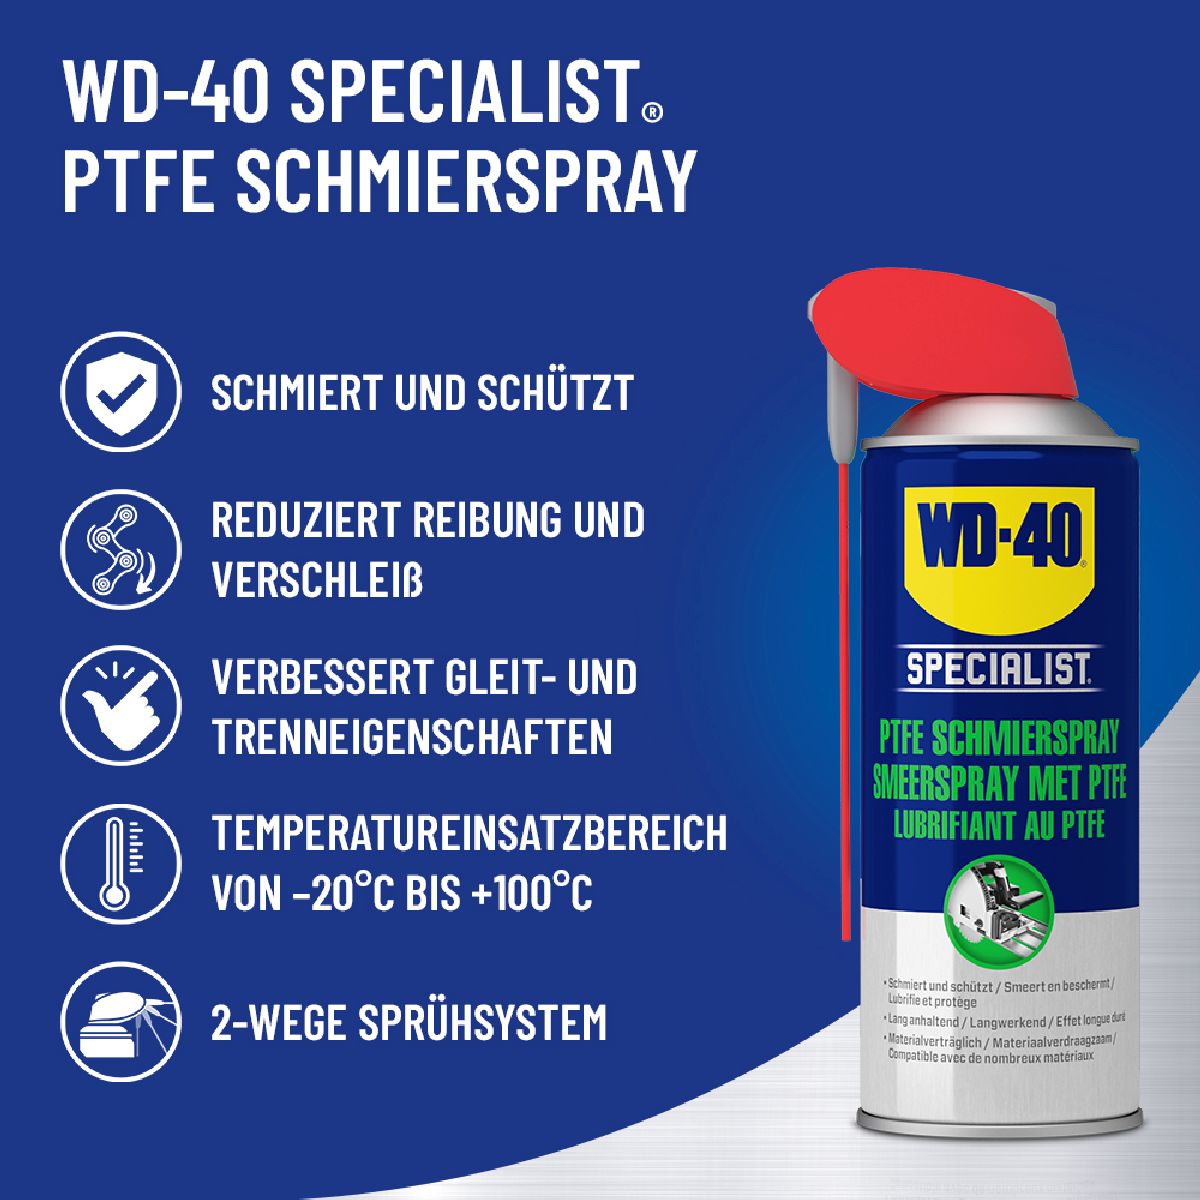 WD-40 Lubrifiant au PTFE Bombe arosol 300 ml